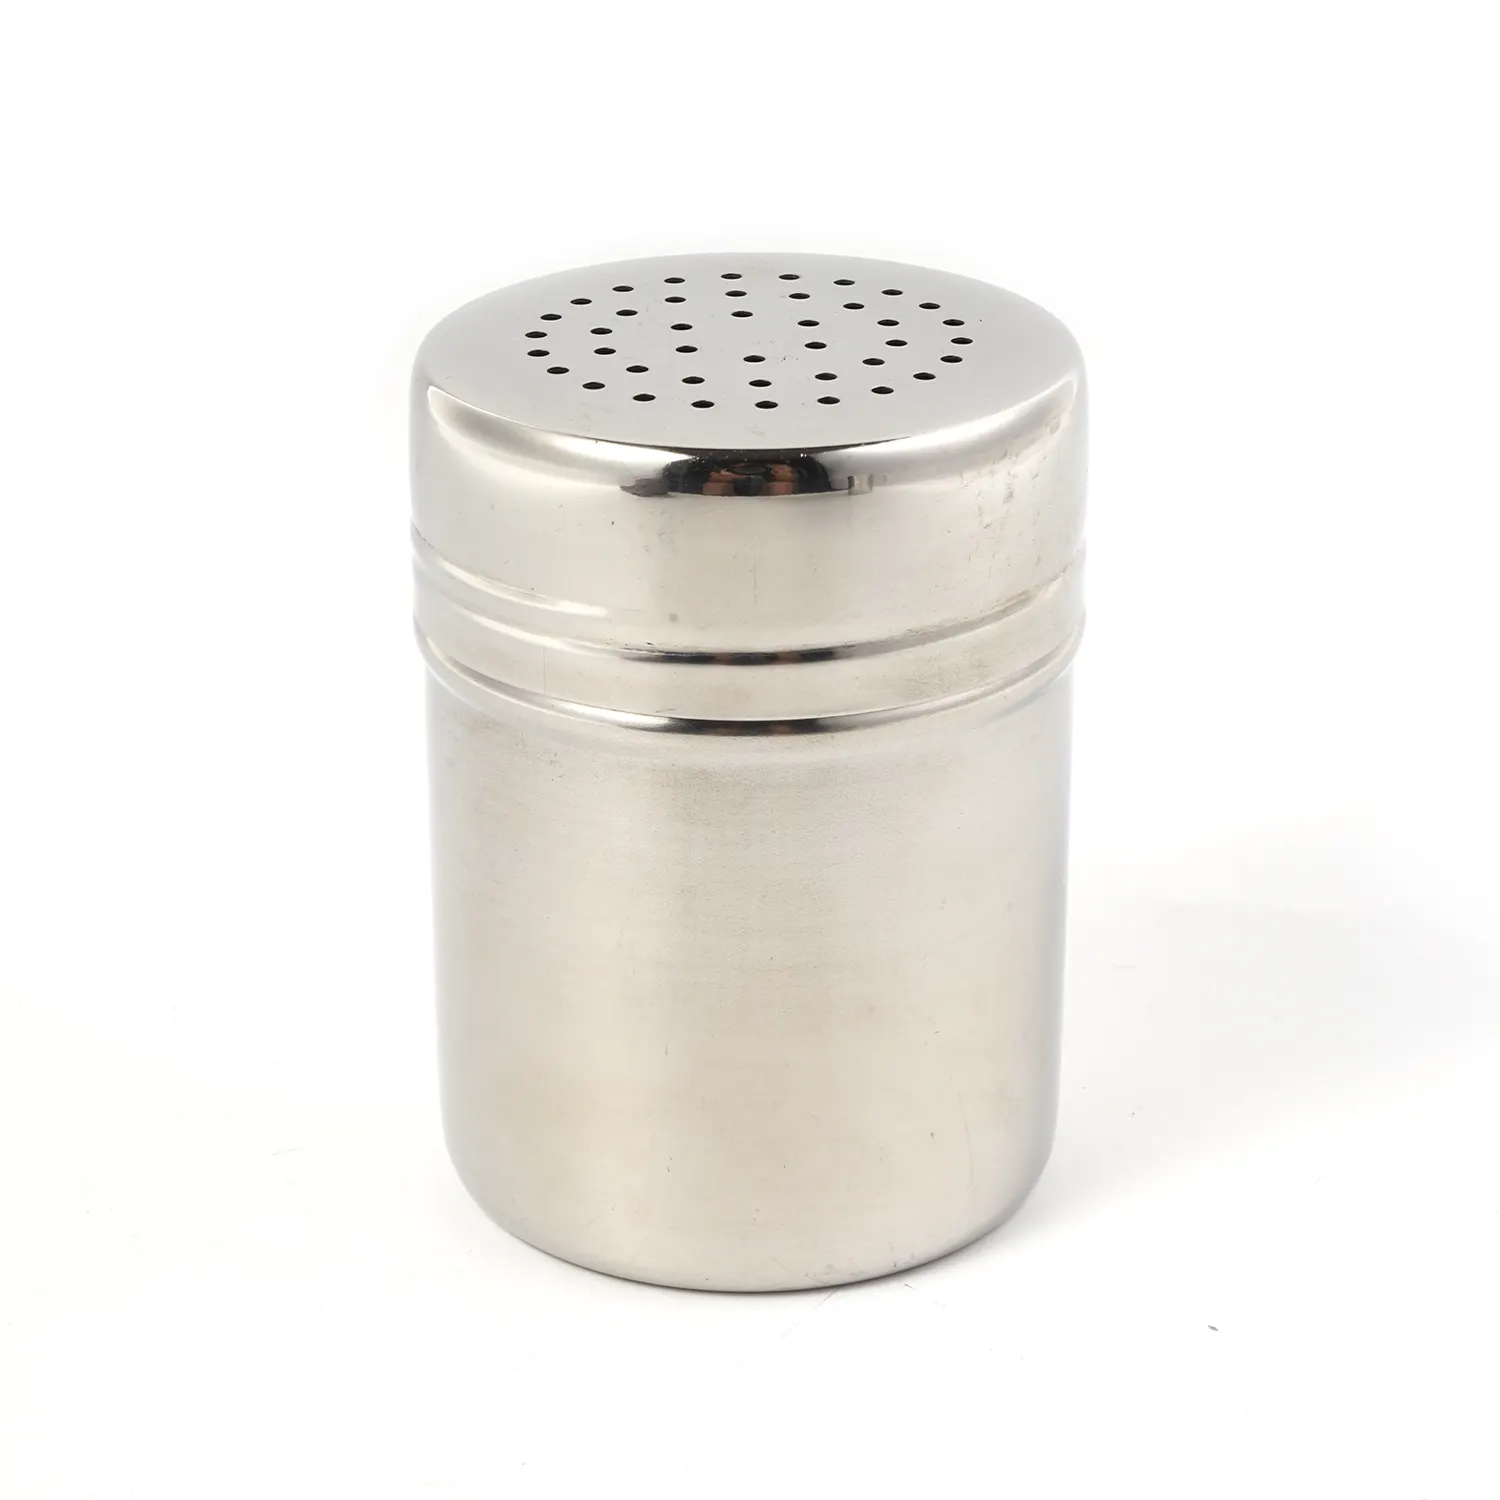 Bottiglia di condimento per condimenti rotonda coperchio in metallo in acciaio inossidabile barattolo di spezie agitatore per caffè al sale